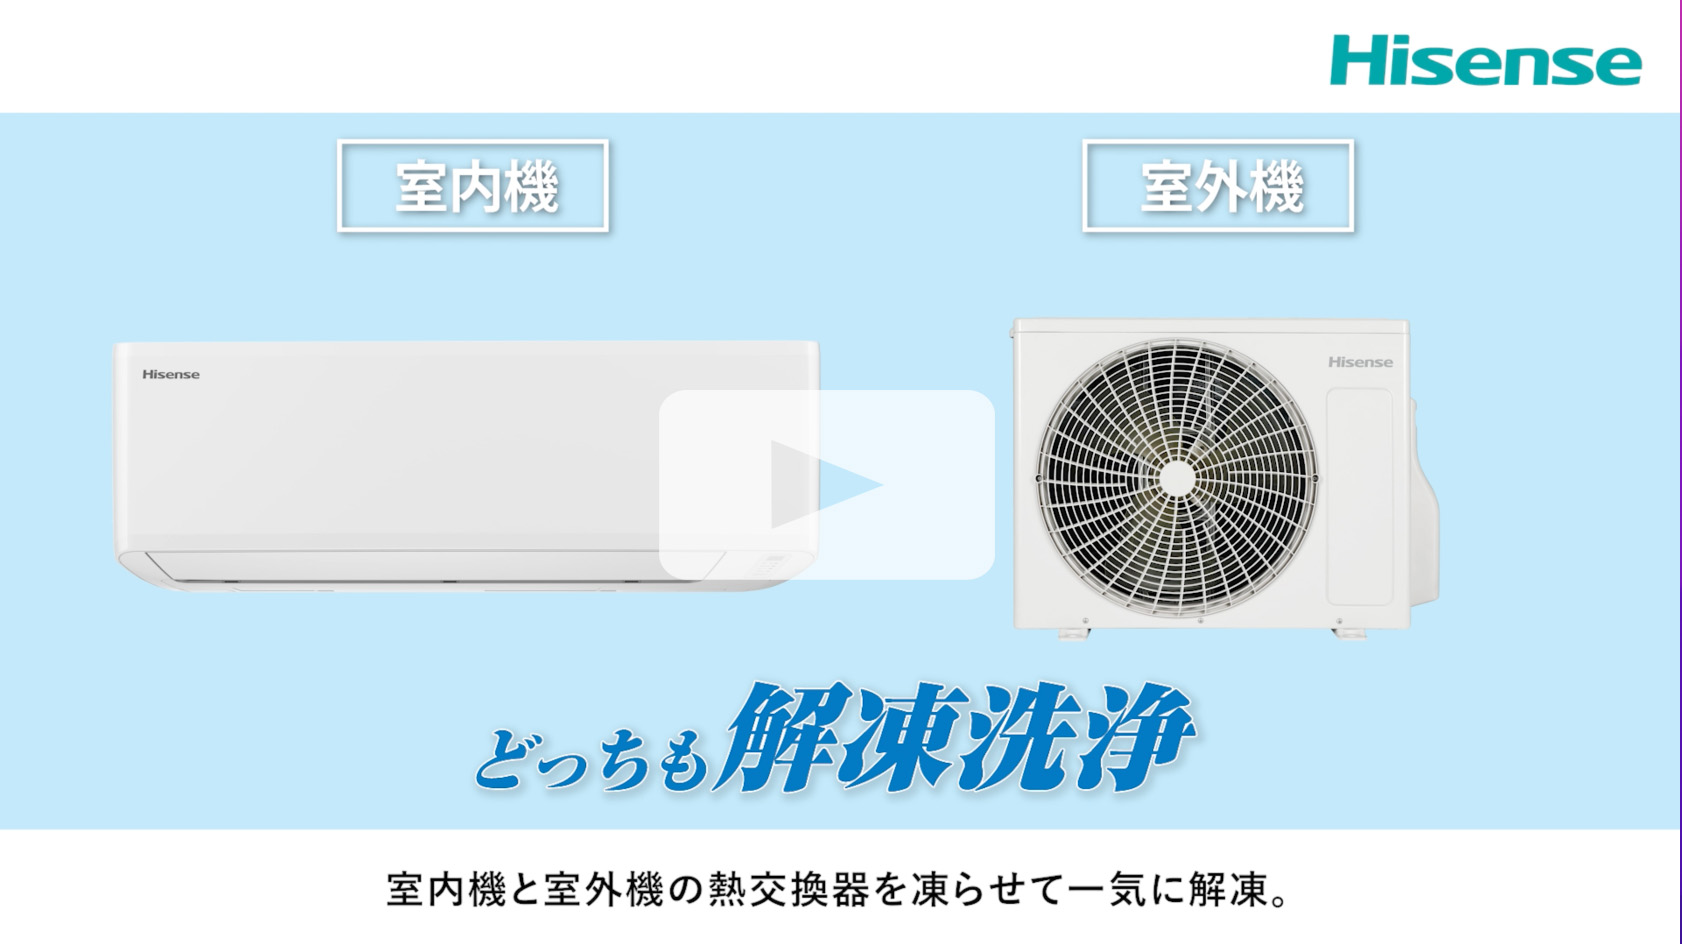 ルームエアコン(Hisense株式会社) - 冷暖房/空調